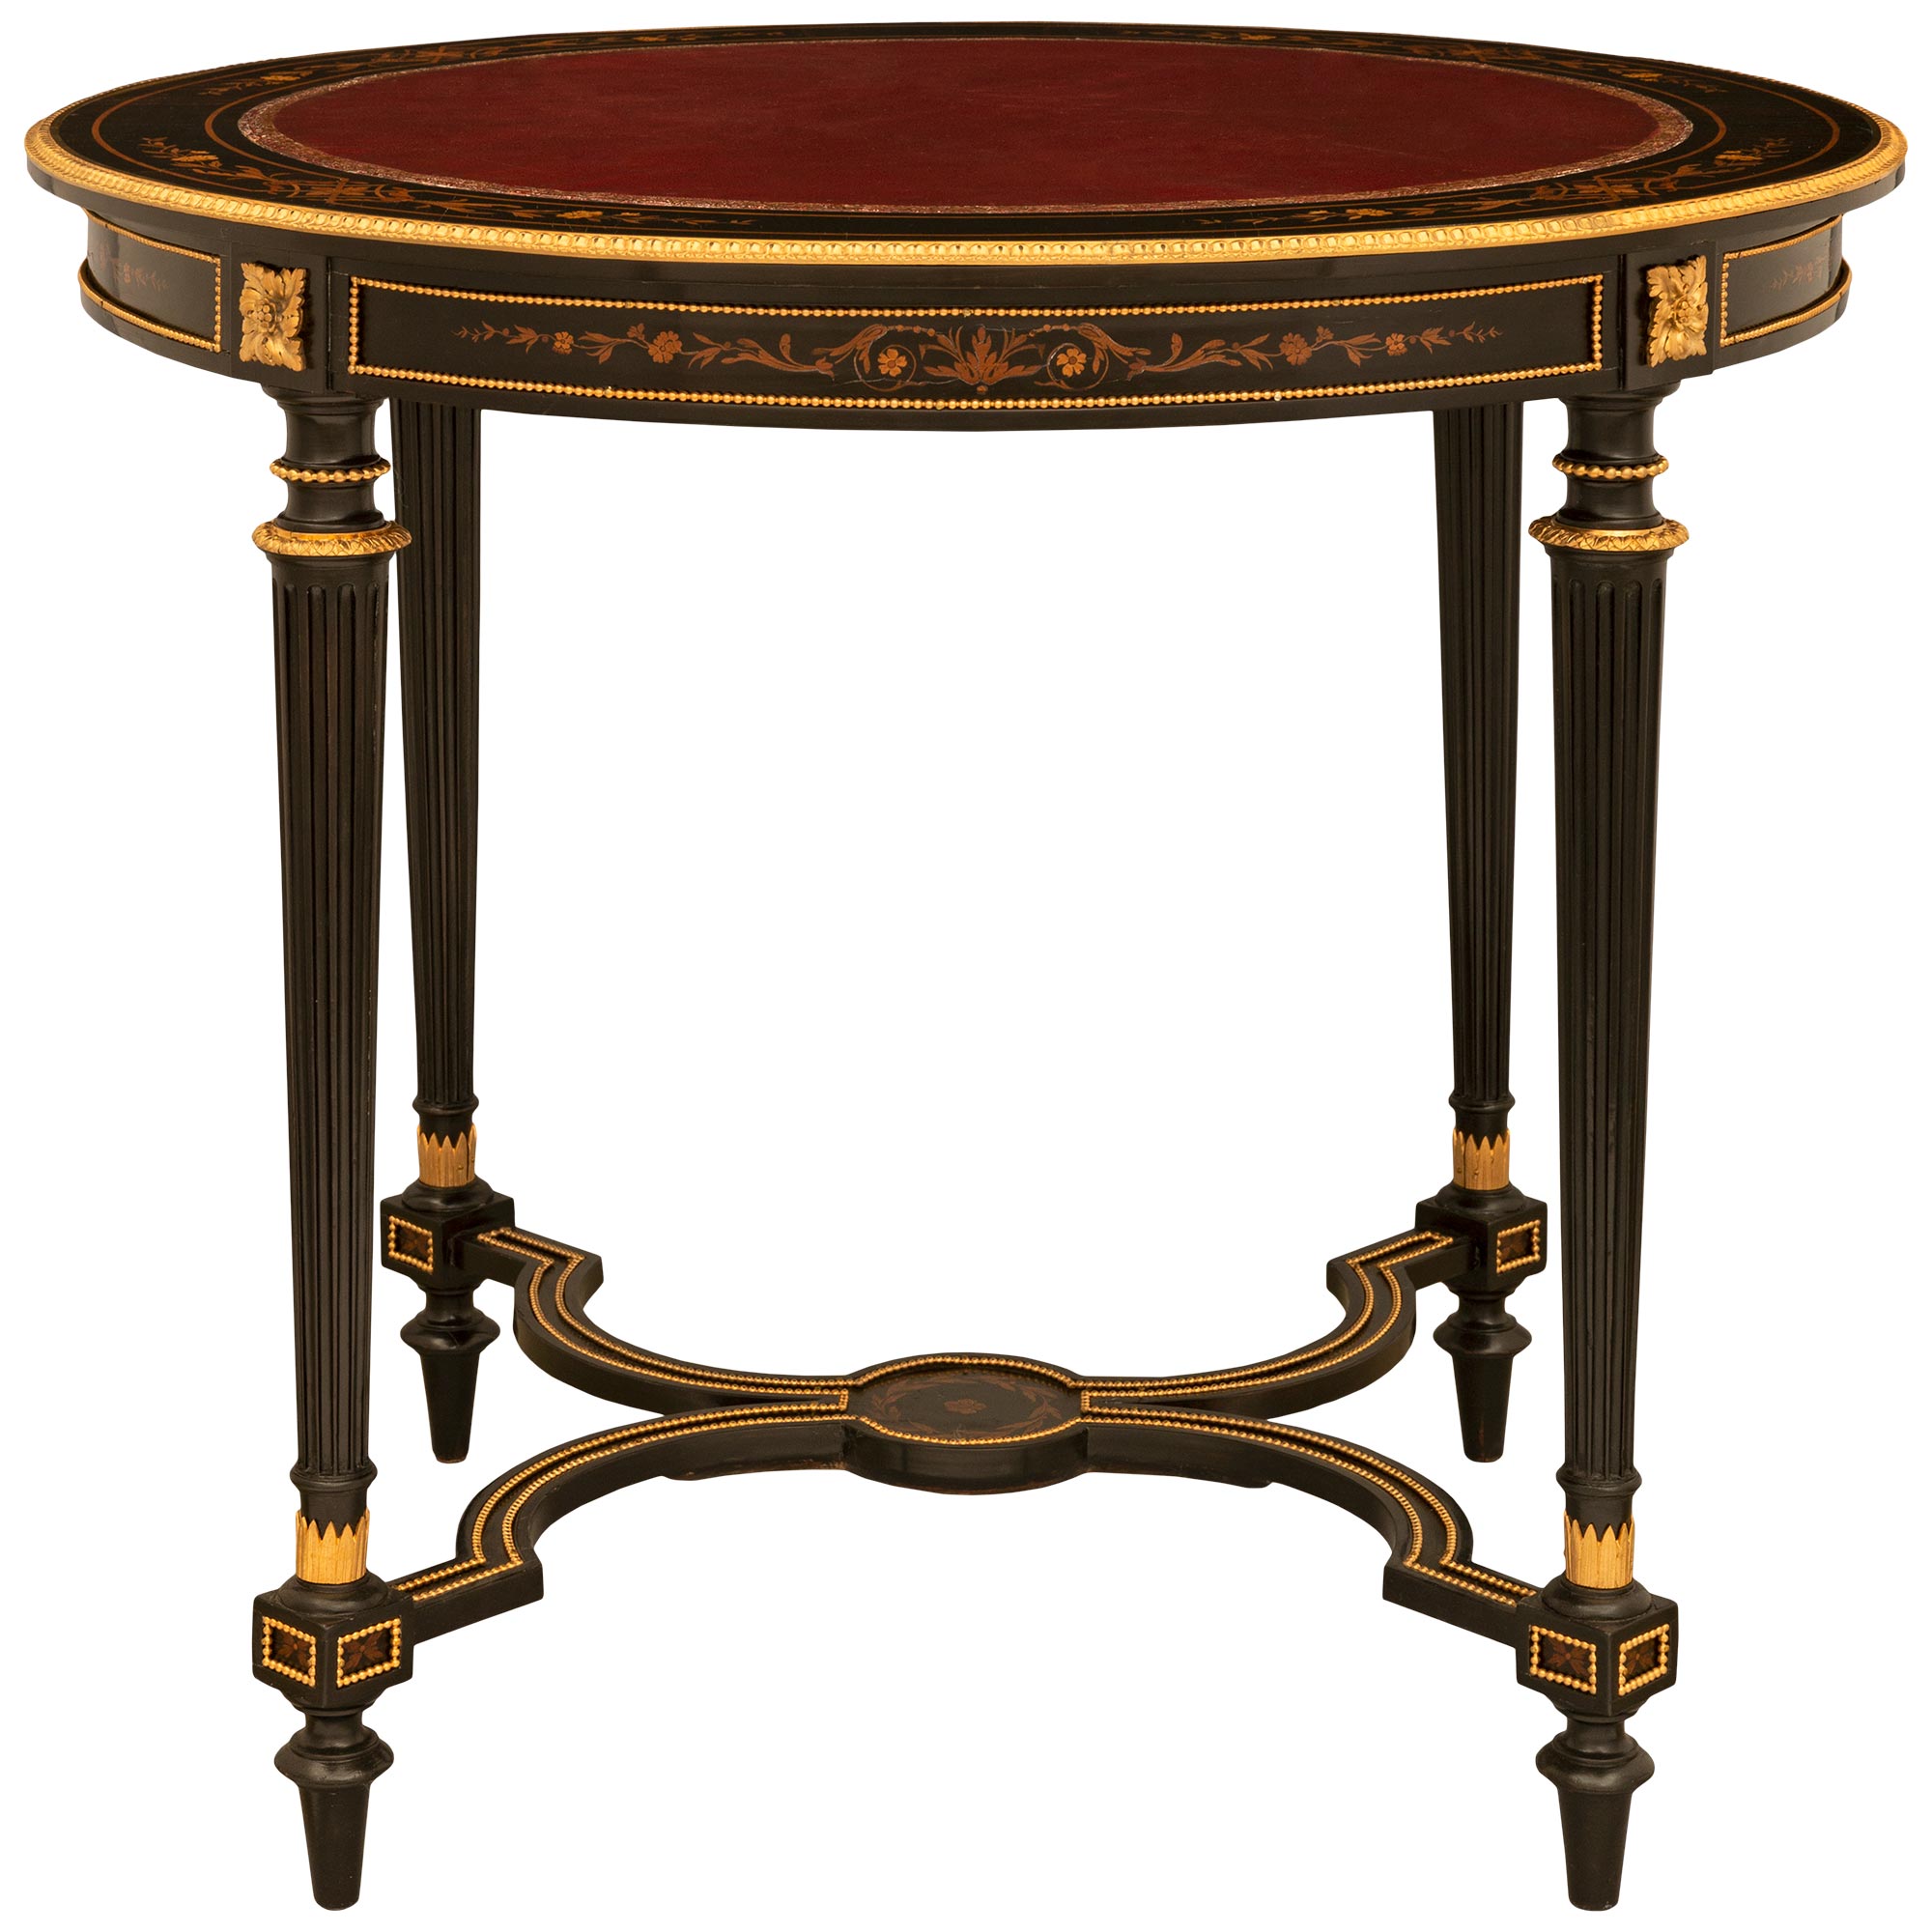 Table centrale française du 19ème siècle de style Louis XVI d'époque Napoléon III